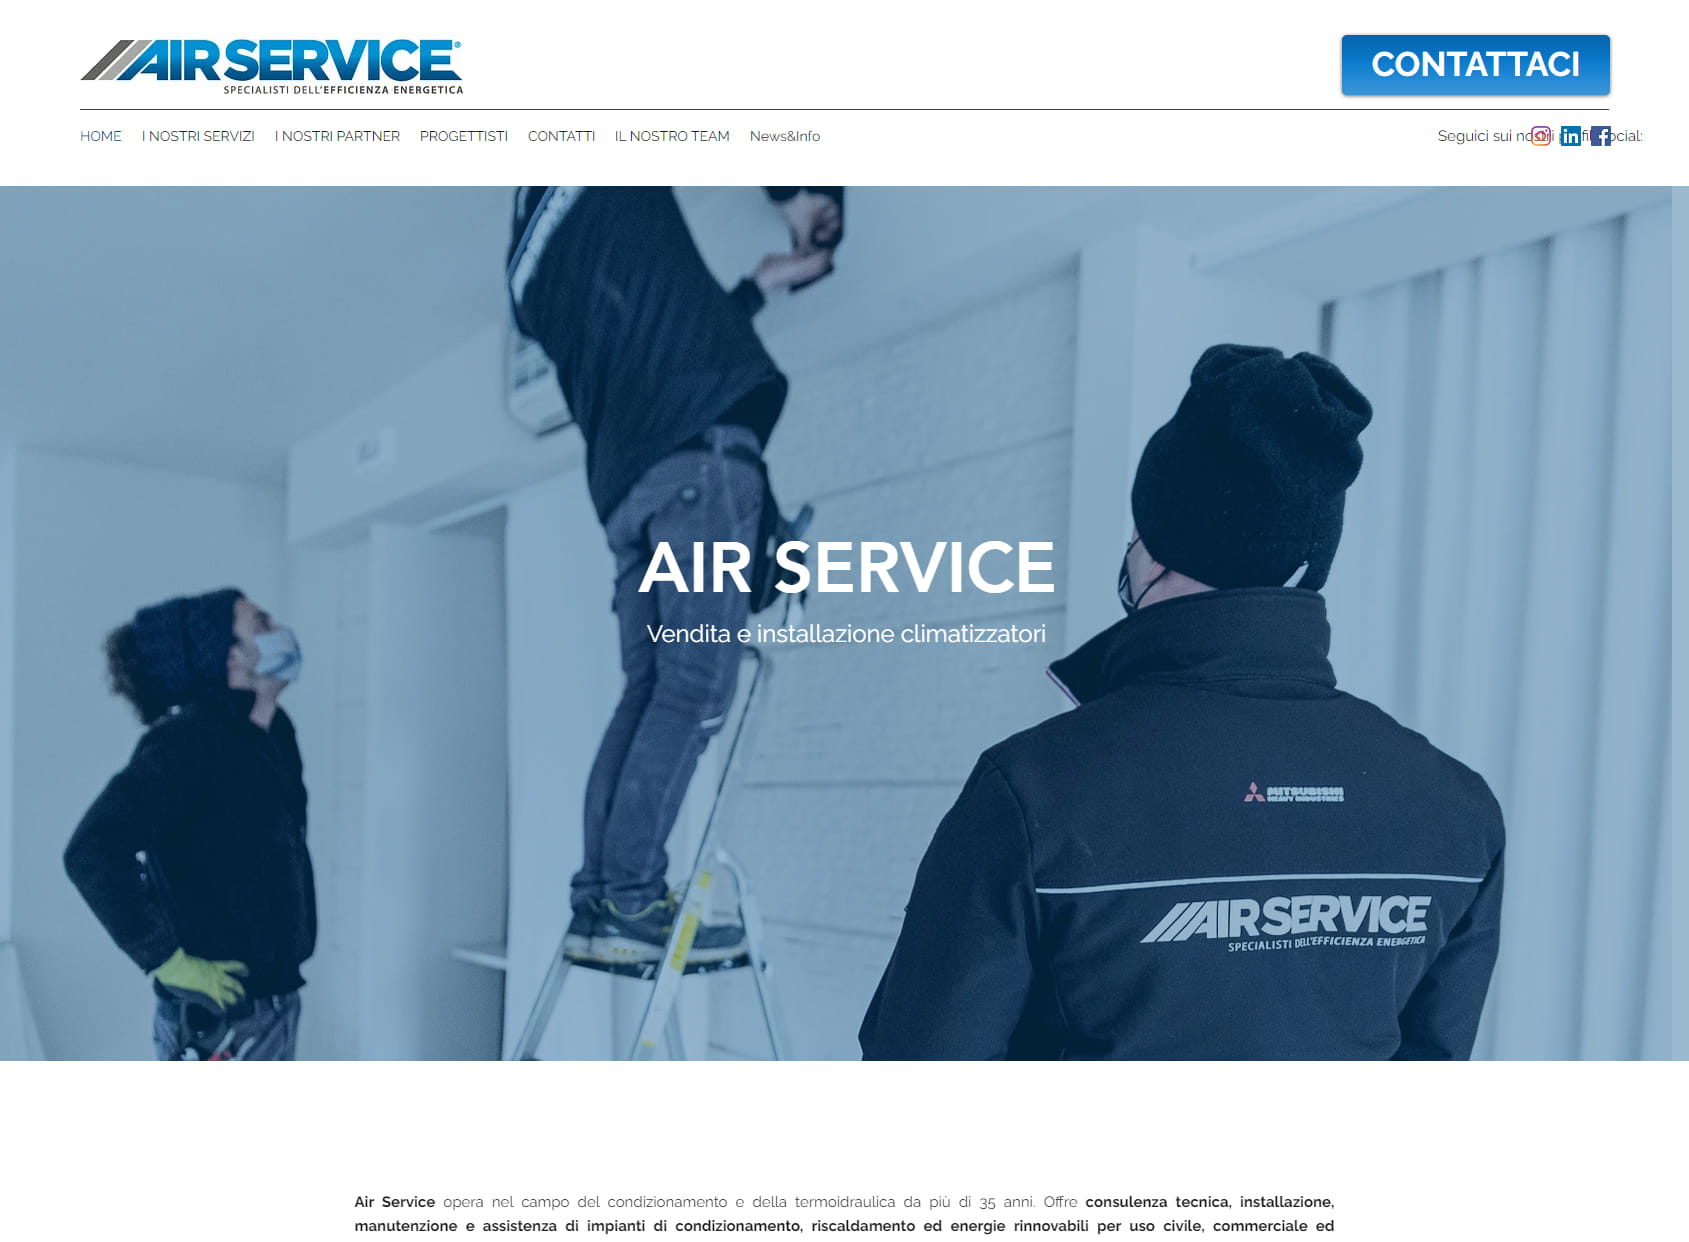 Air Service